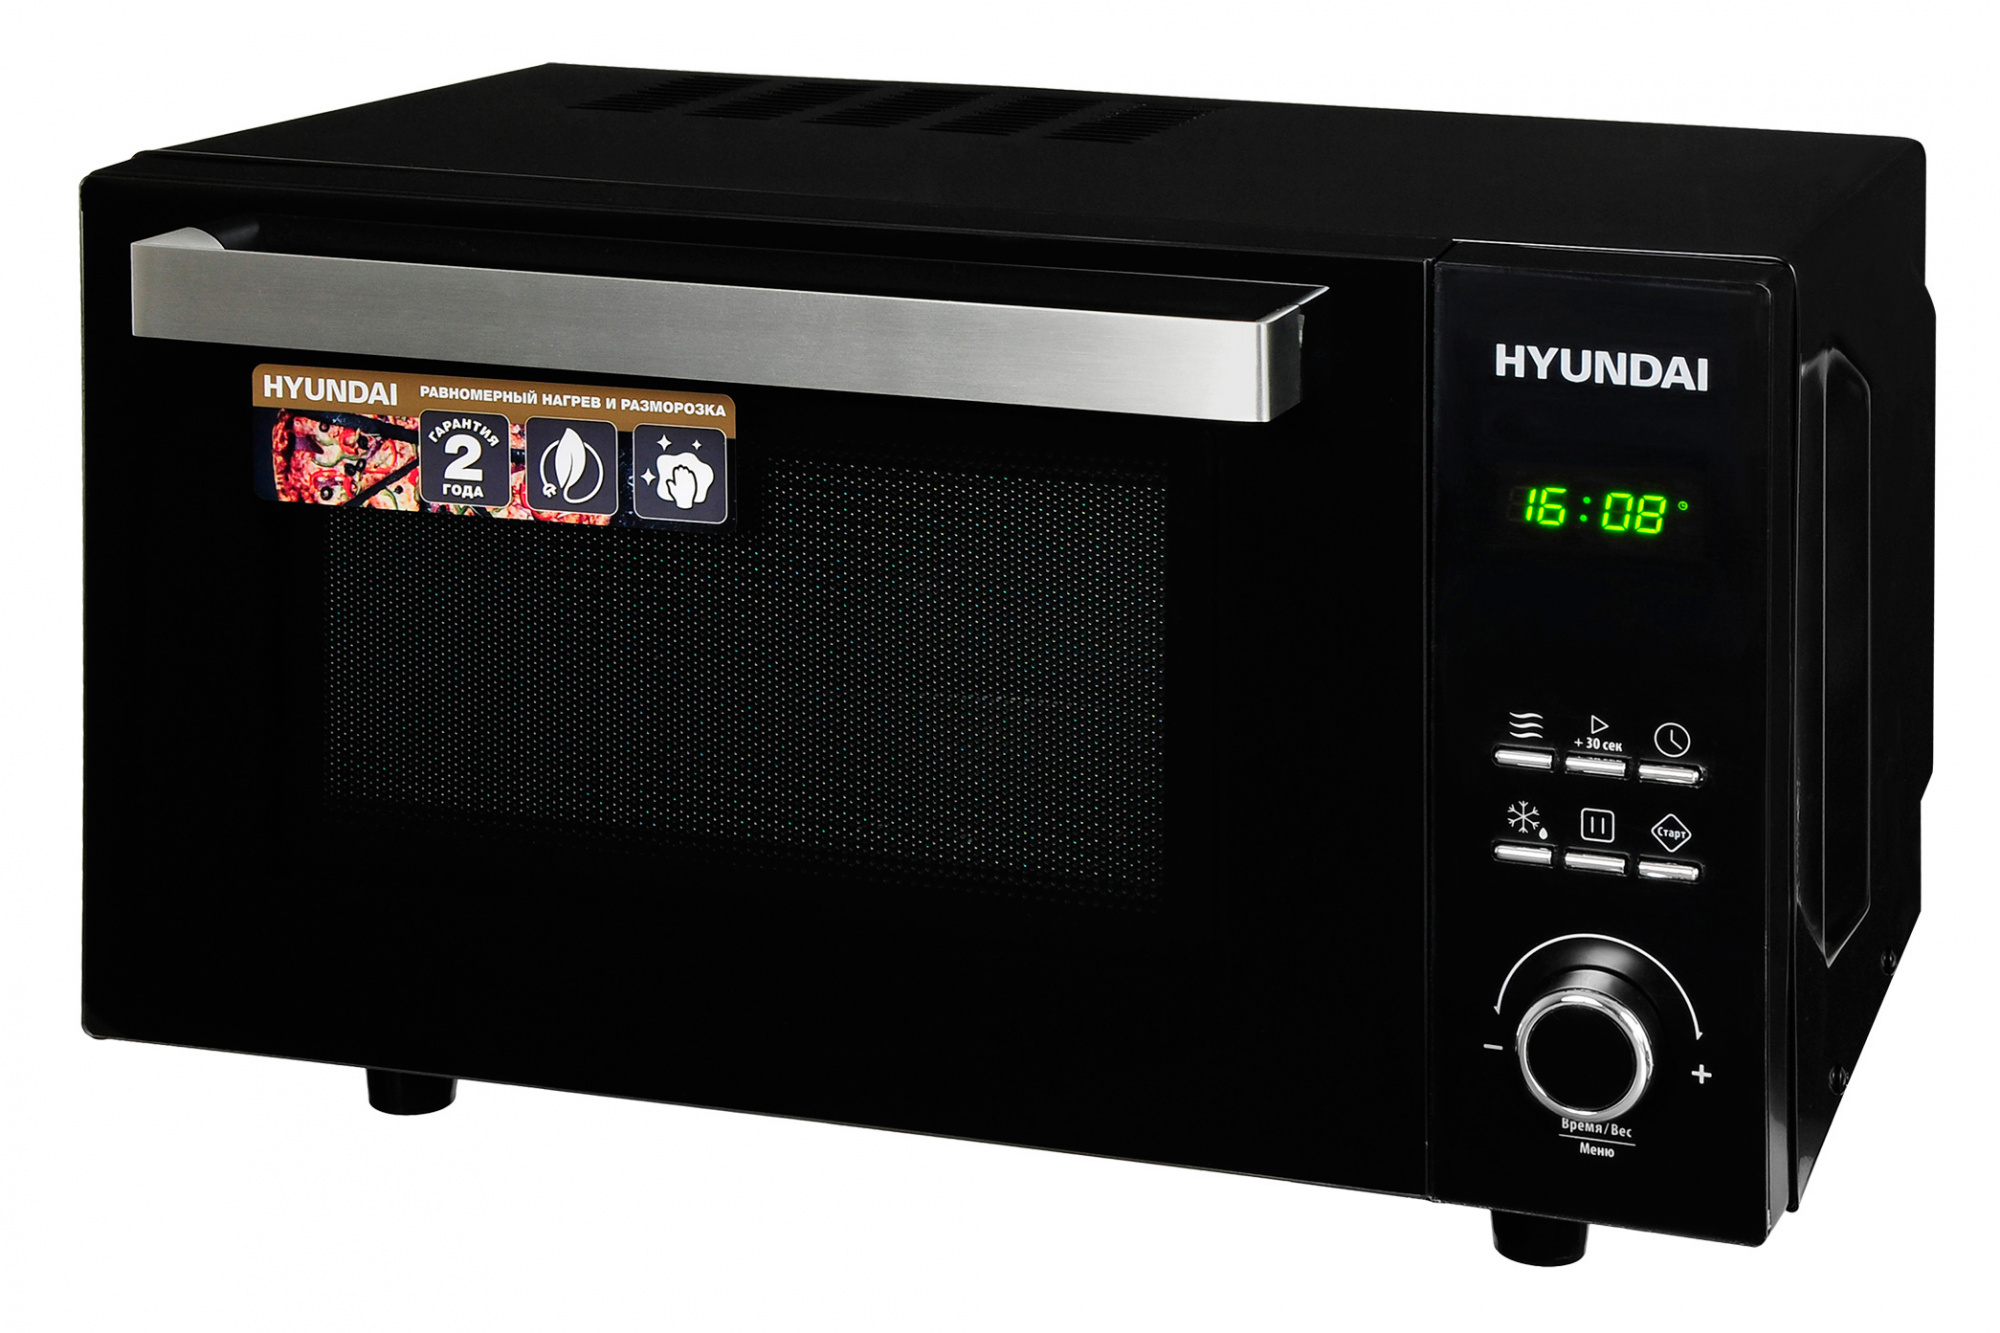 Микроволновая печь соло HYUNDAI HYM-D2073 черный микроволновая печь соло hyundai hym d3001